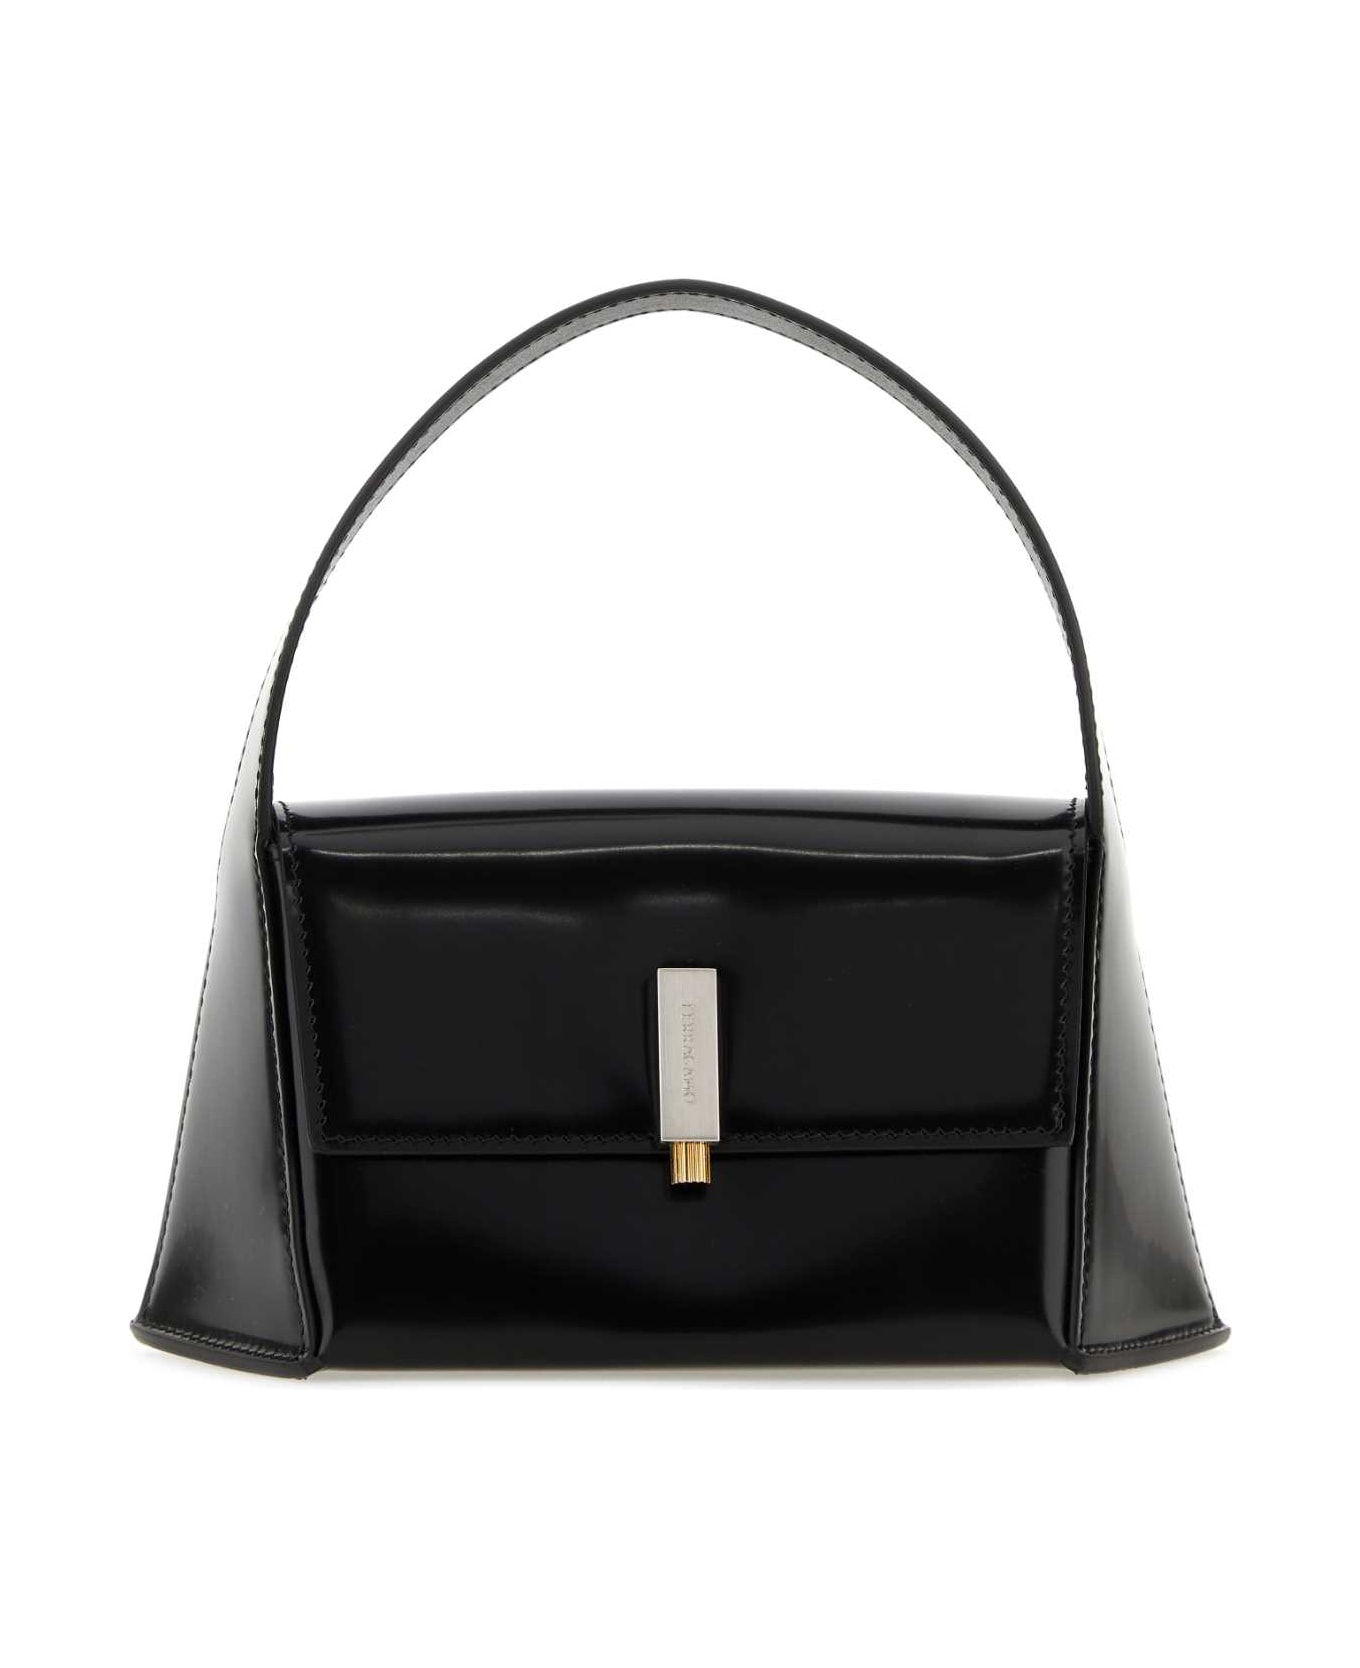 Ferragamo Black Leather Mini Prisma Handbag - NERO